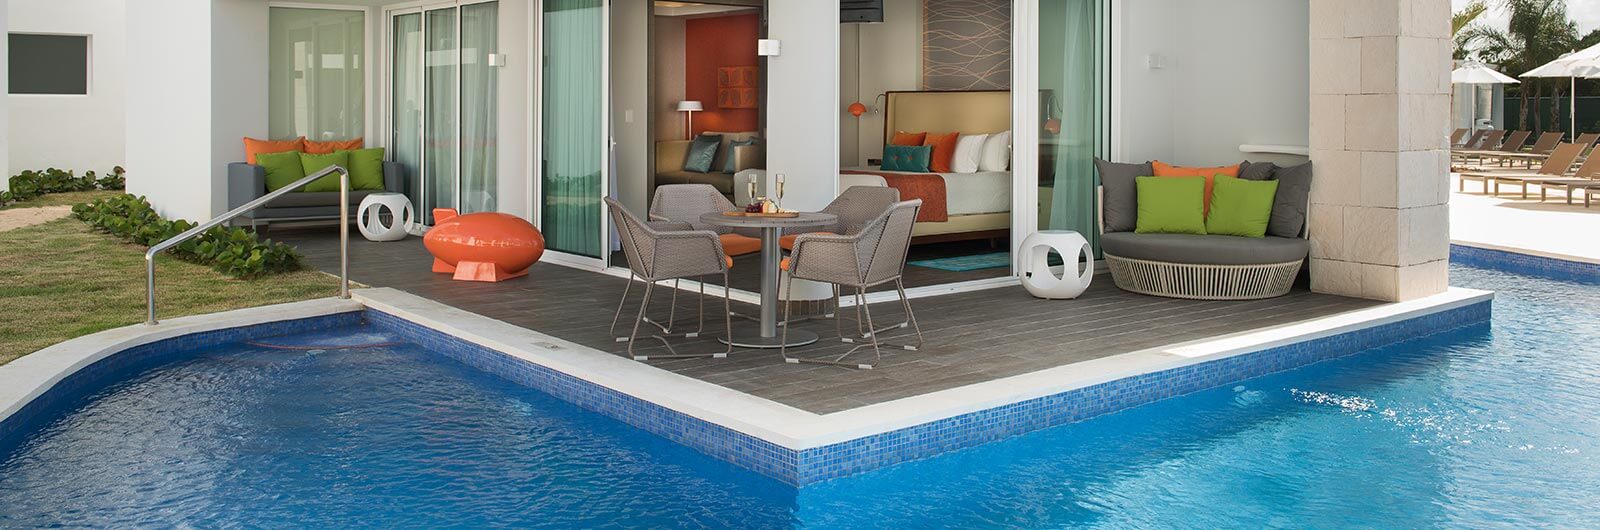 Nickelodeon Resort Punta Cana Accommodations - Swank Wraparound Swim-Up Suite